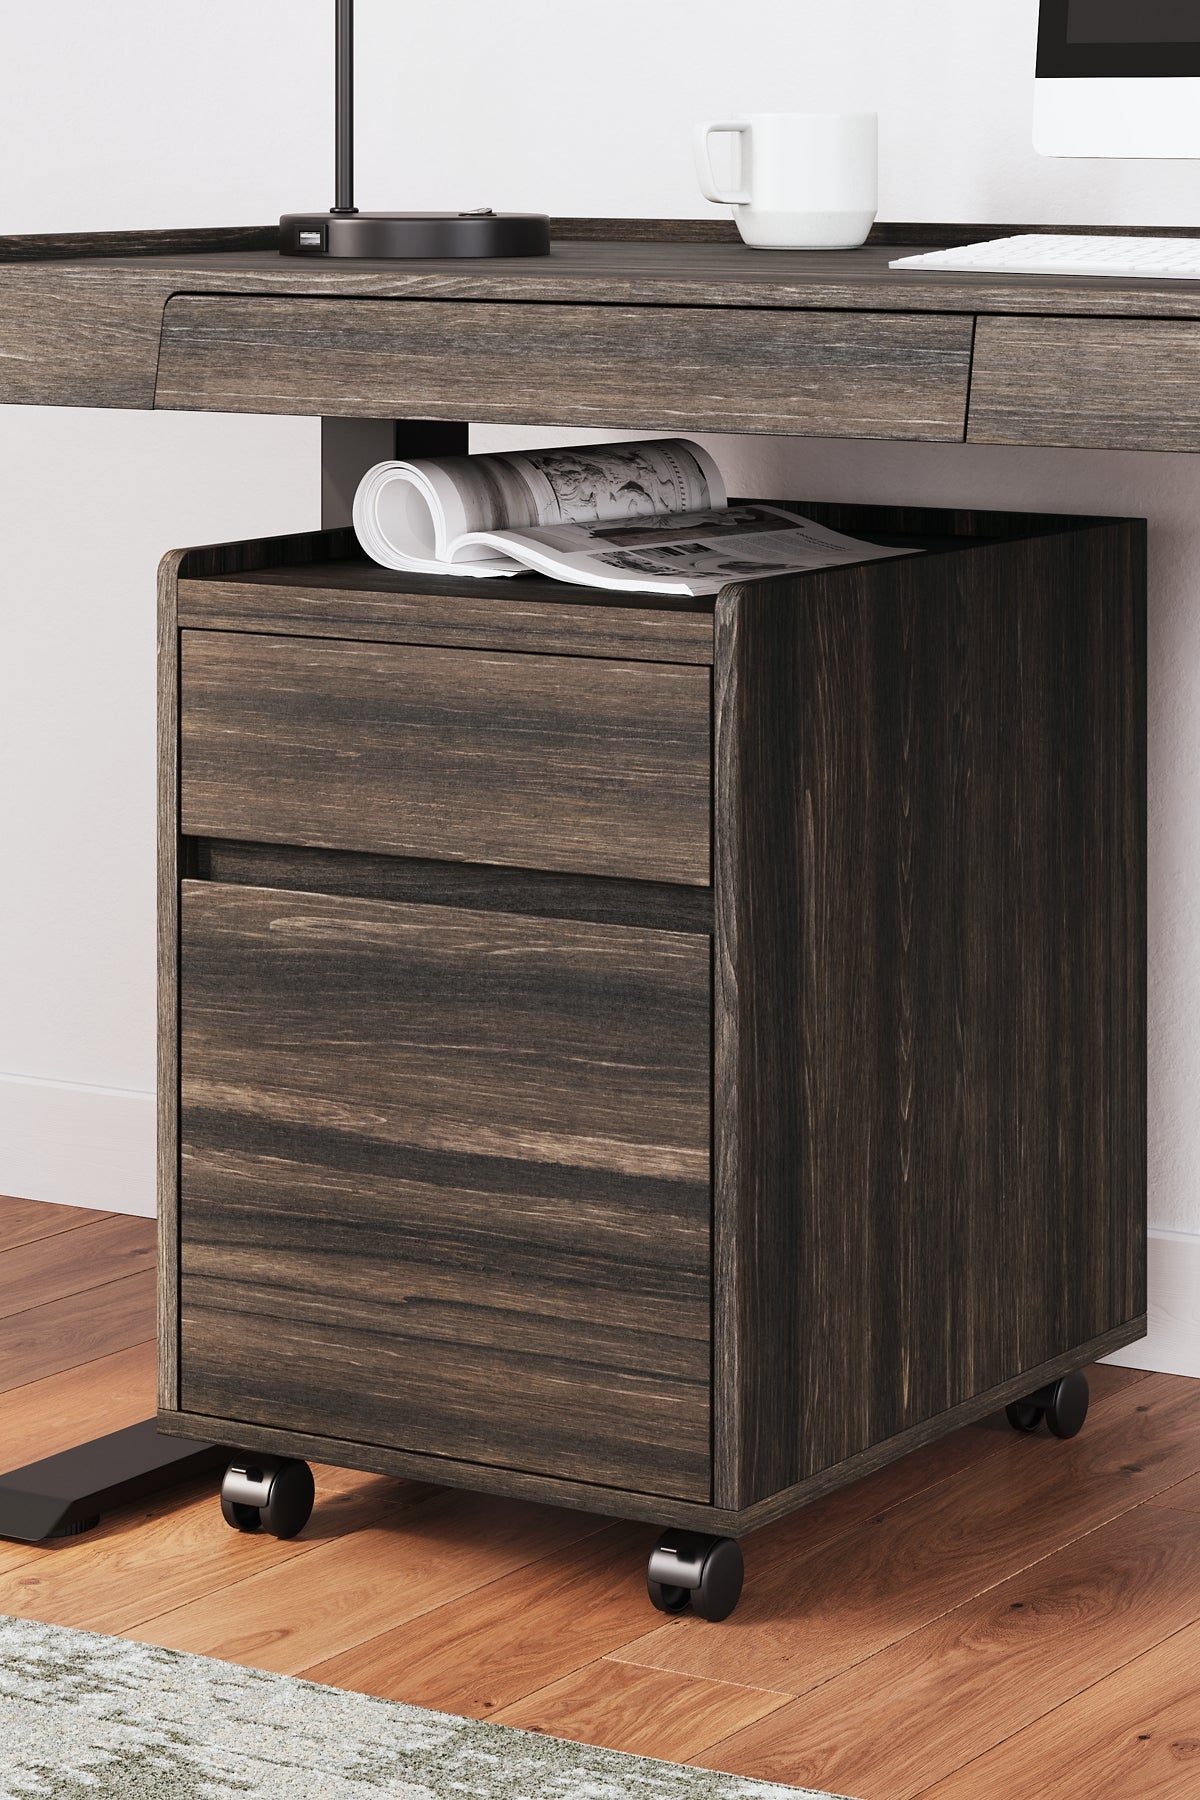 Zendex Home Office Desk and Storage Smyrna Furniture Outlet